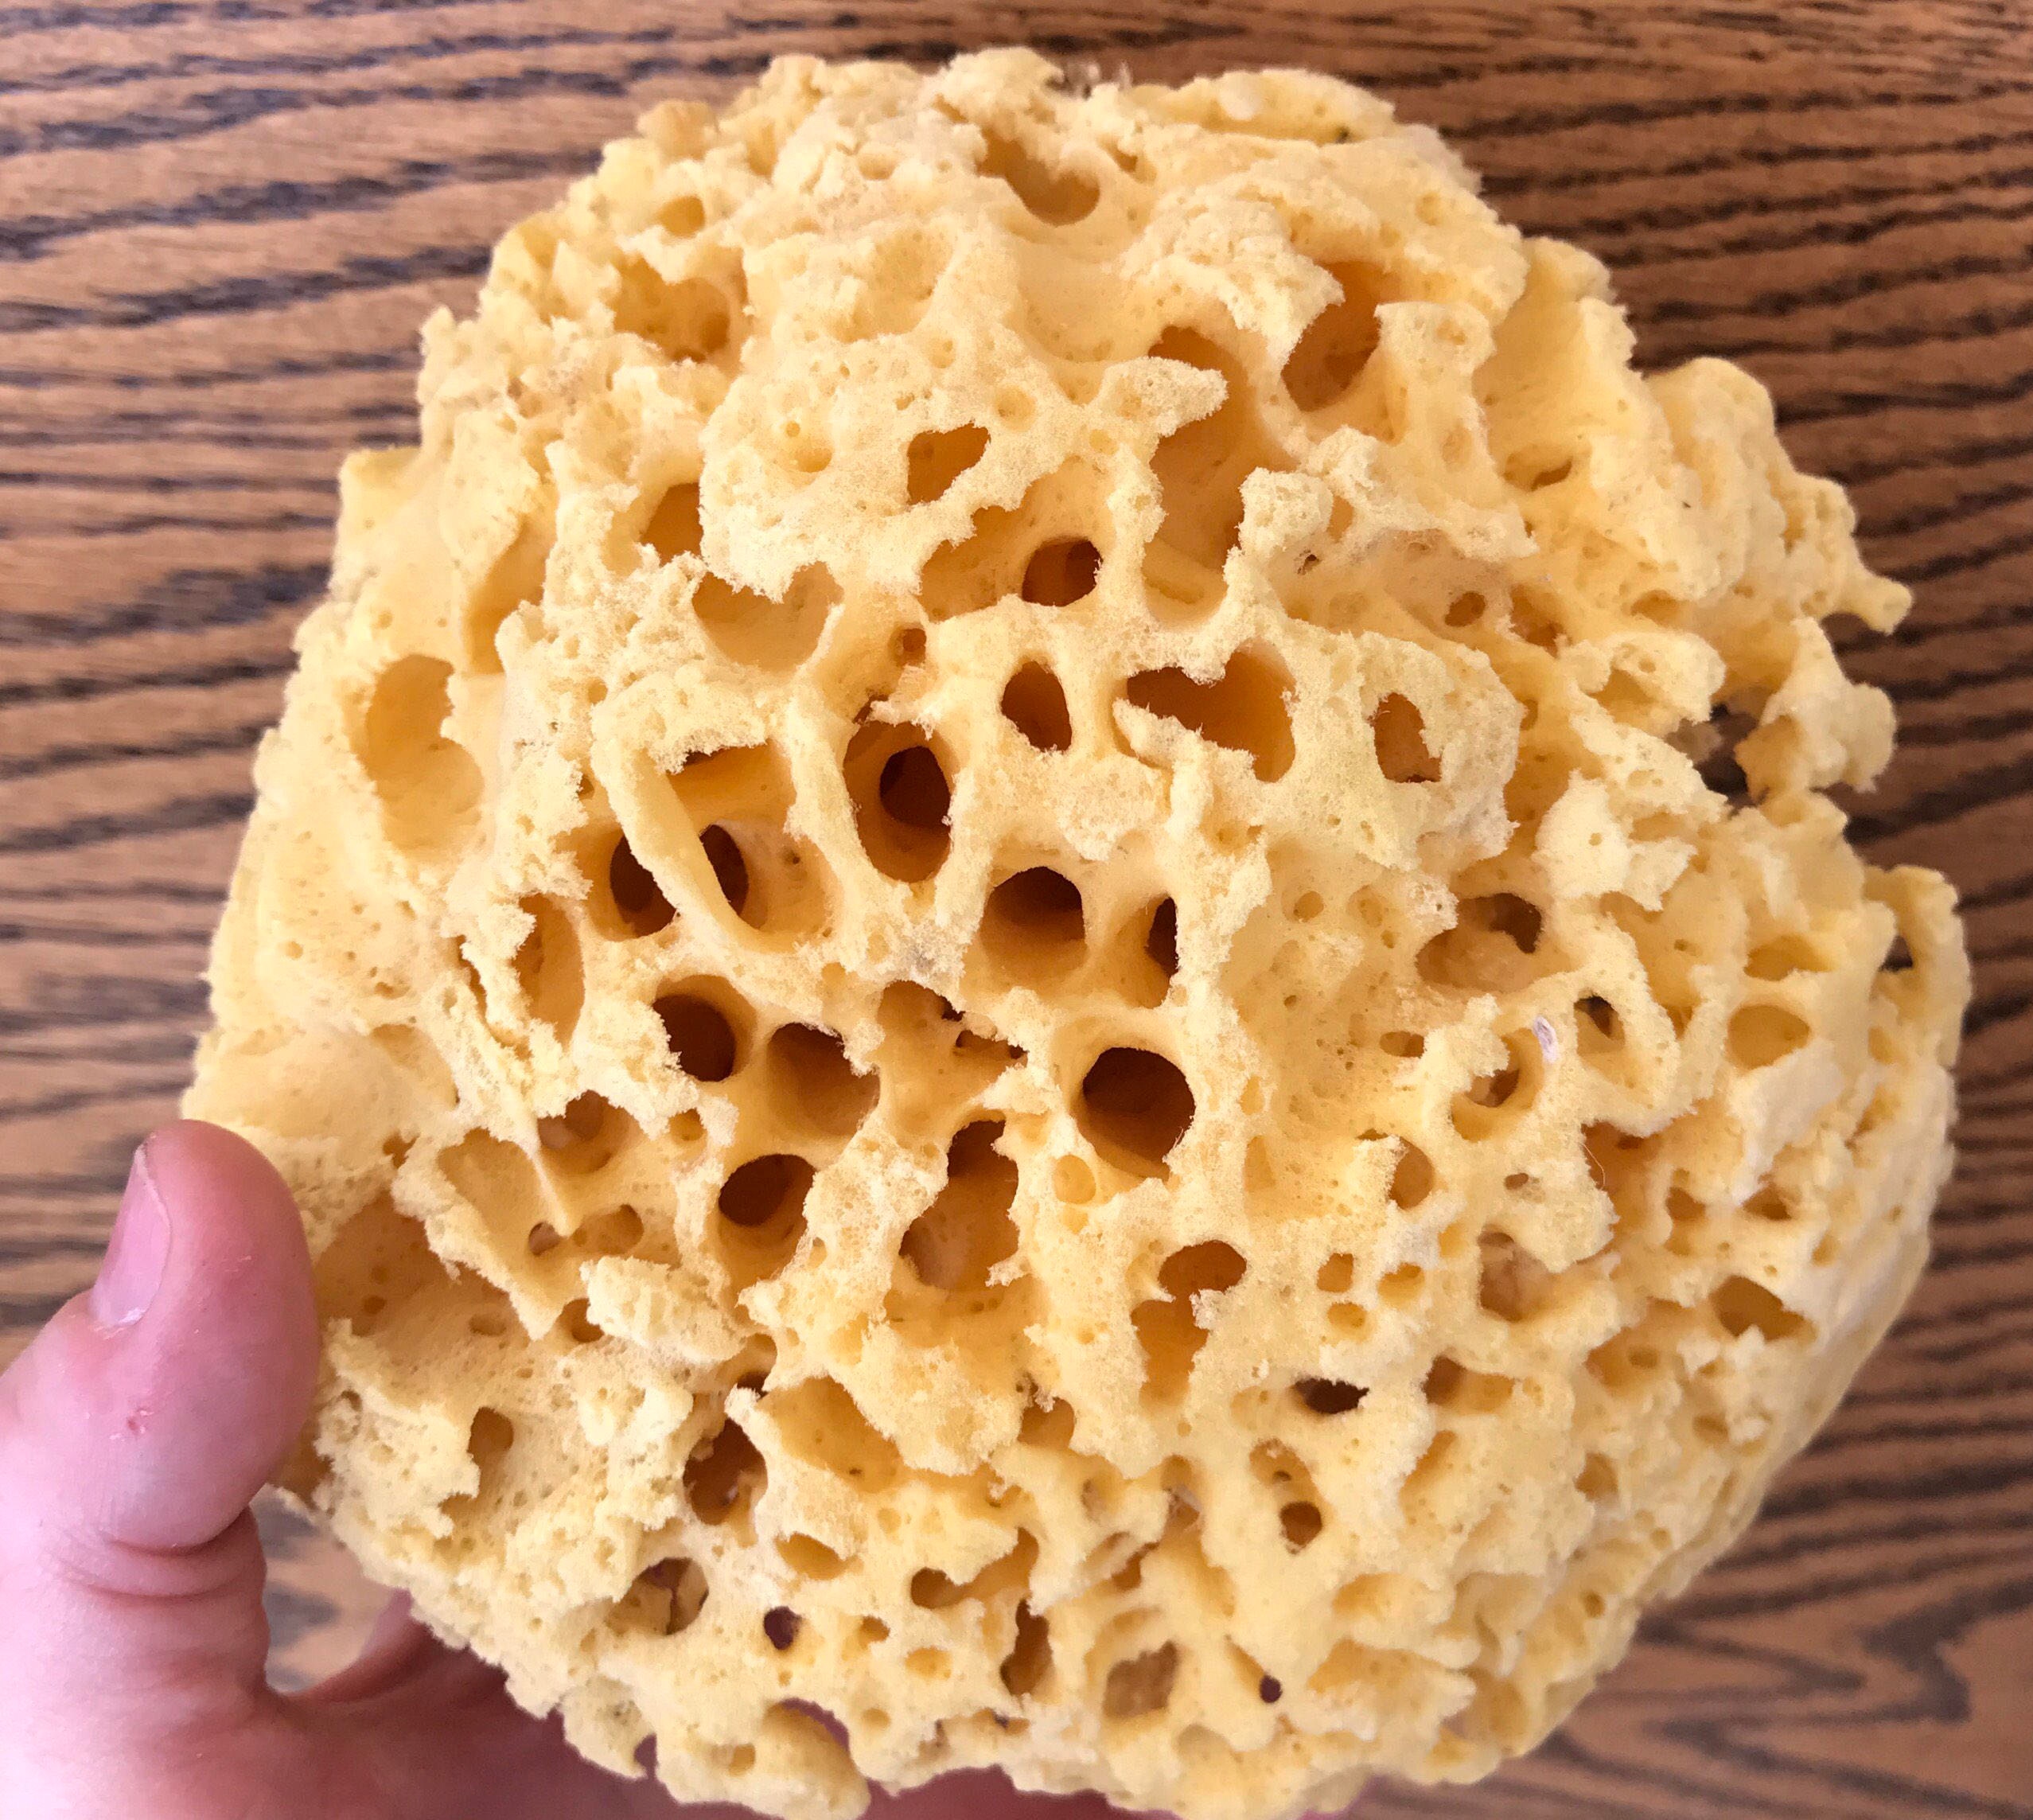 All Natural Sea Sponge (4-5inch)